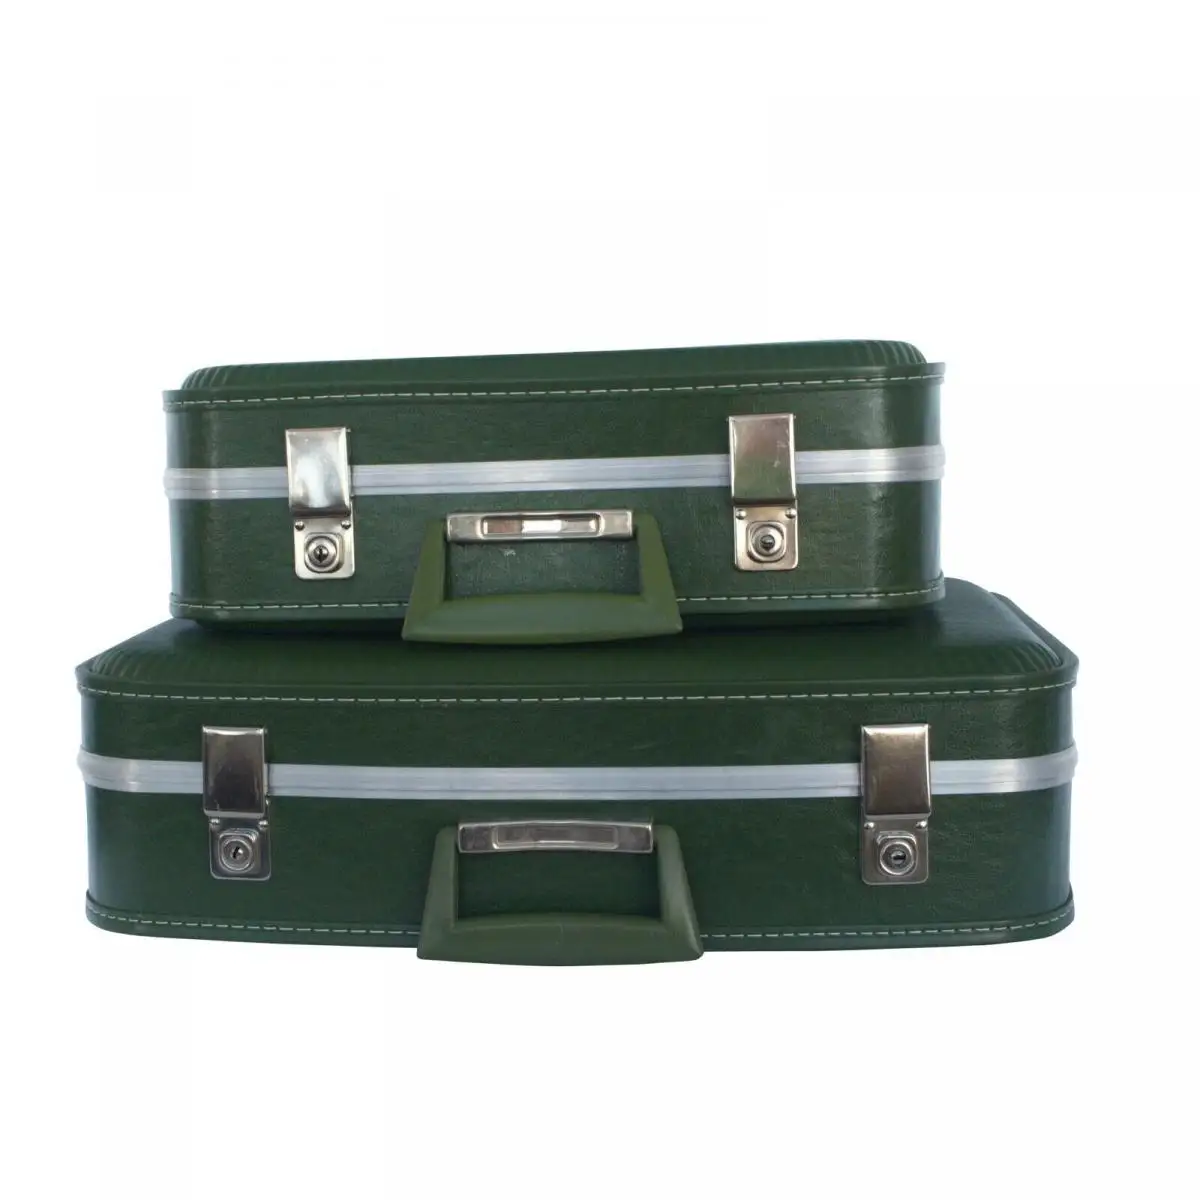 Vintage Koffer Set 2 Reisekoffer grün mit Schlüssel Alu für Oldtimer 60er Jahre 0